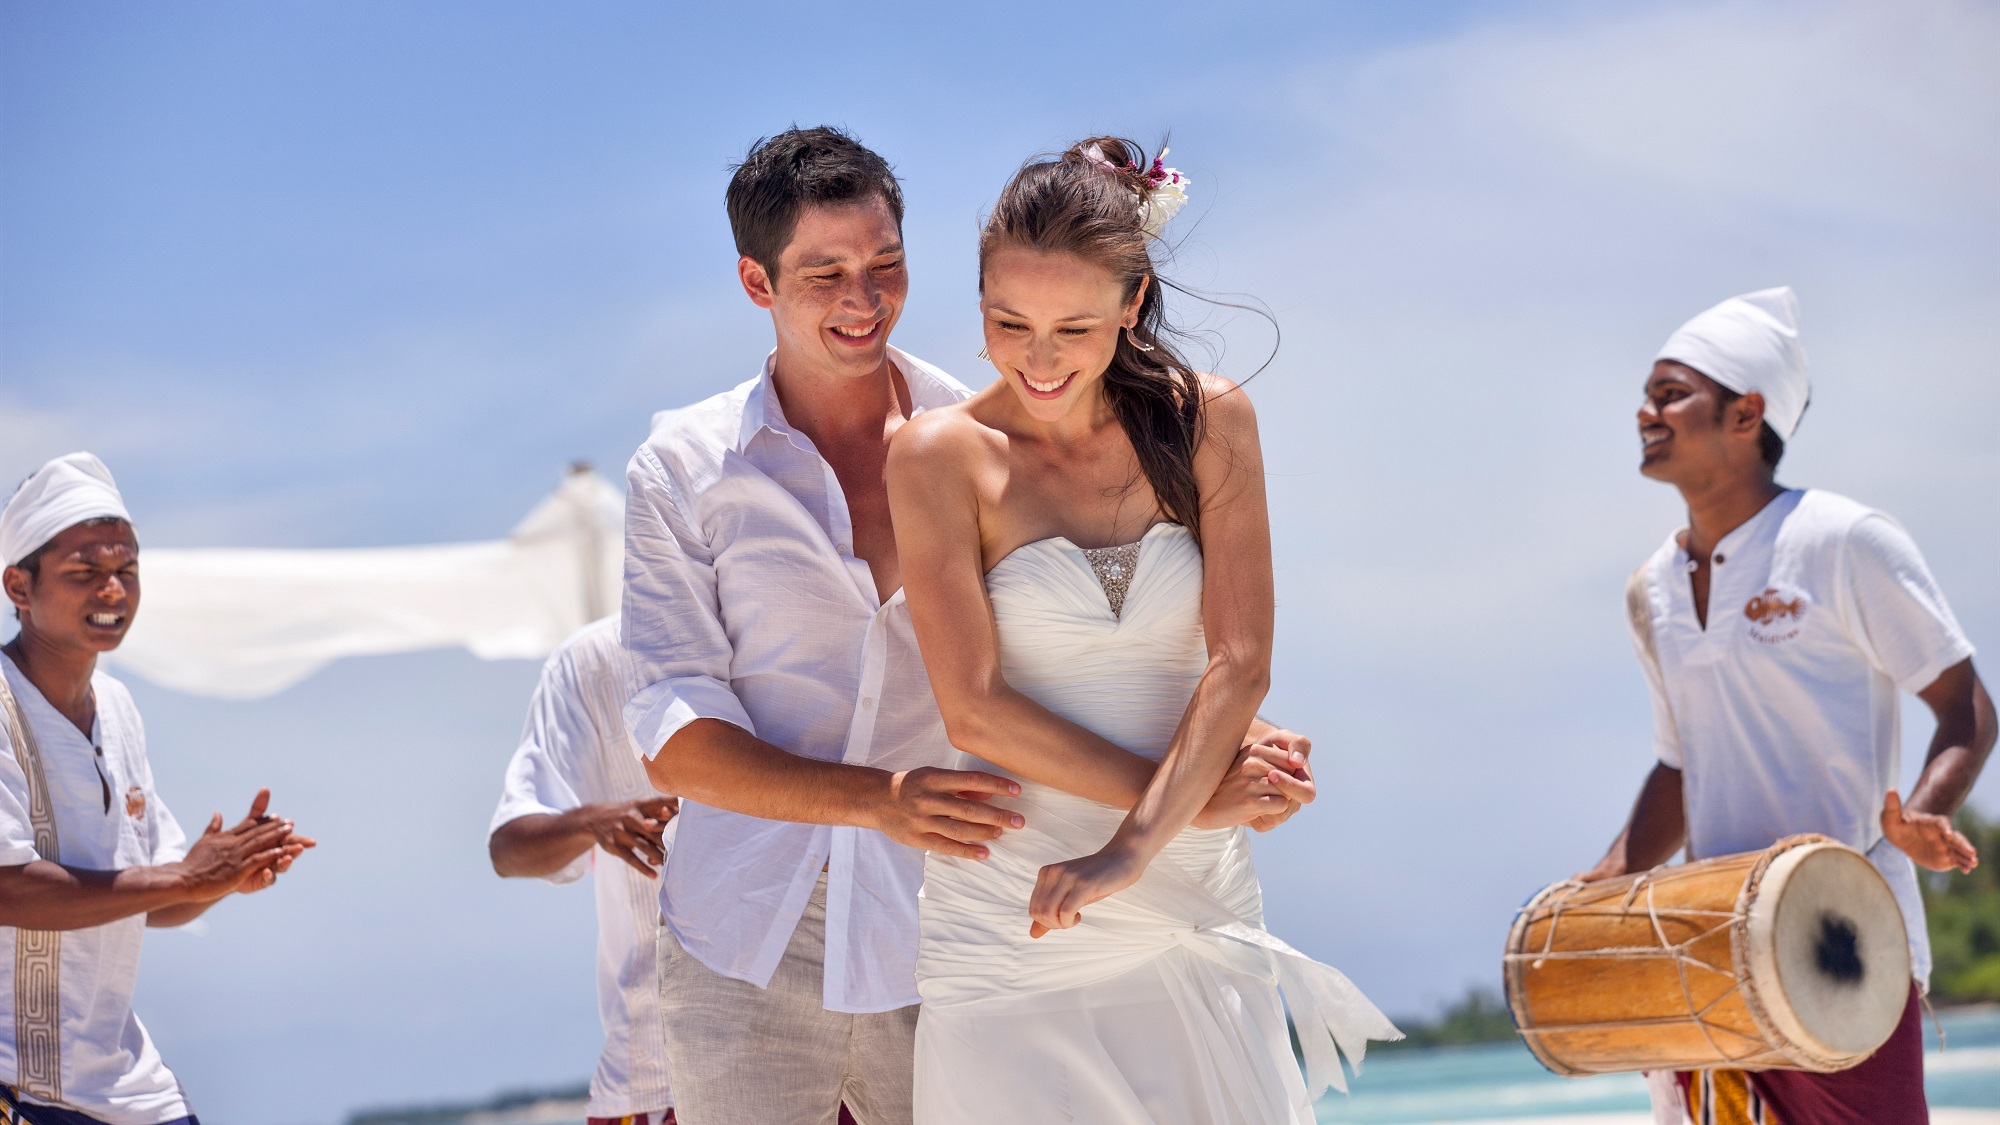 【旅遊】馬爾代夫酒店 浪漫婚禮體驗